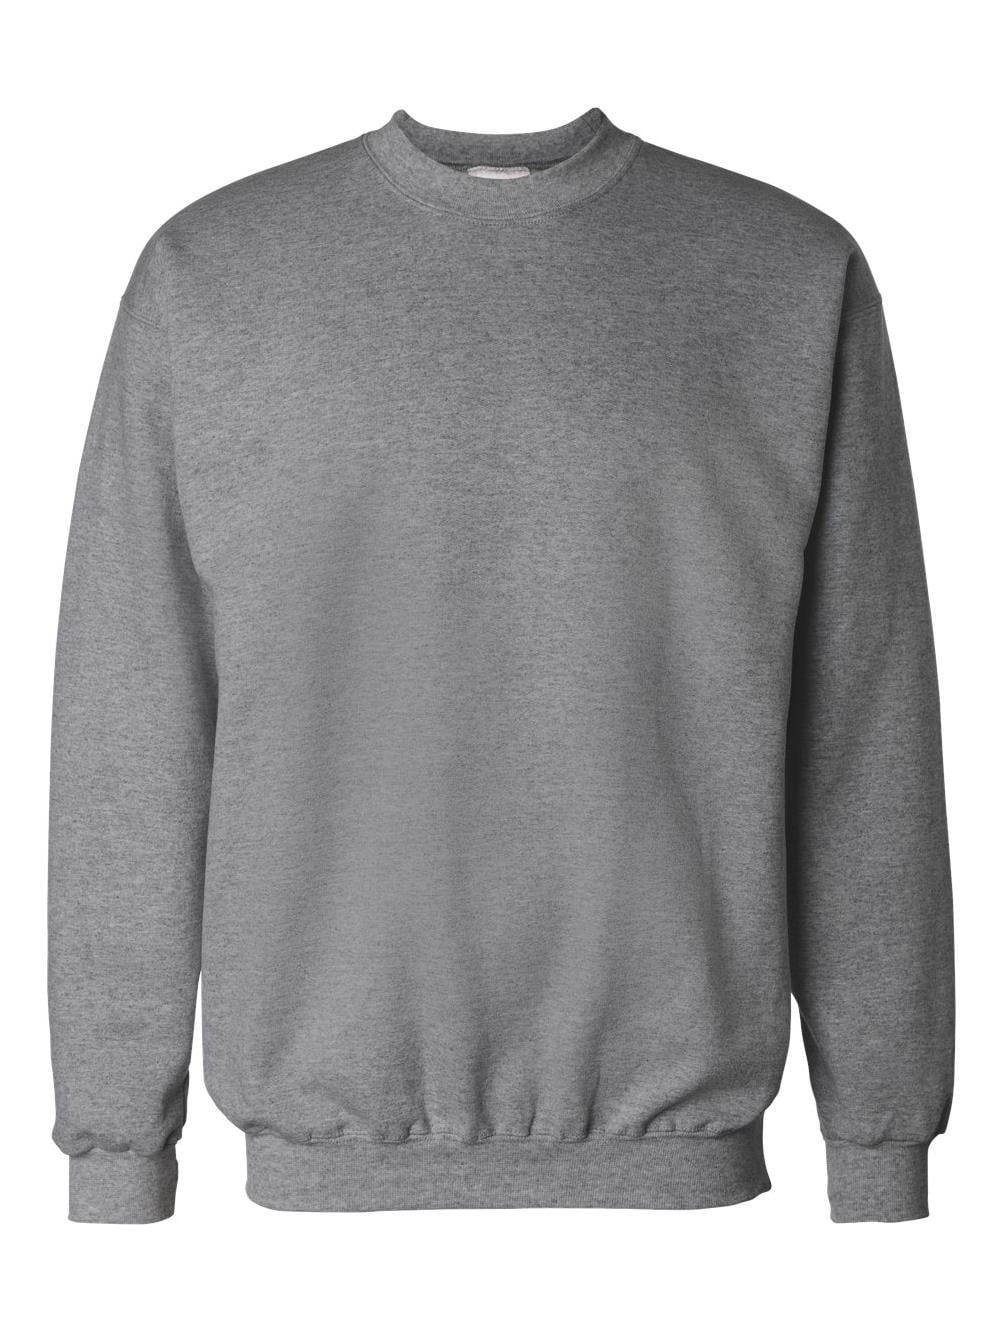 Hanes - Hanes Fleece Ultimate Cotton Crewneck Sweatshirt F260 - Walmart.com